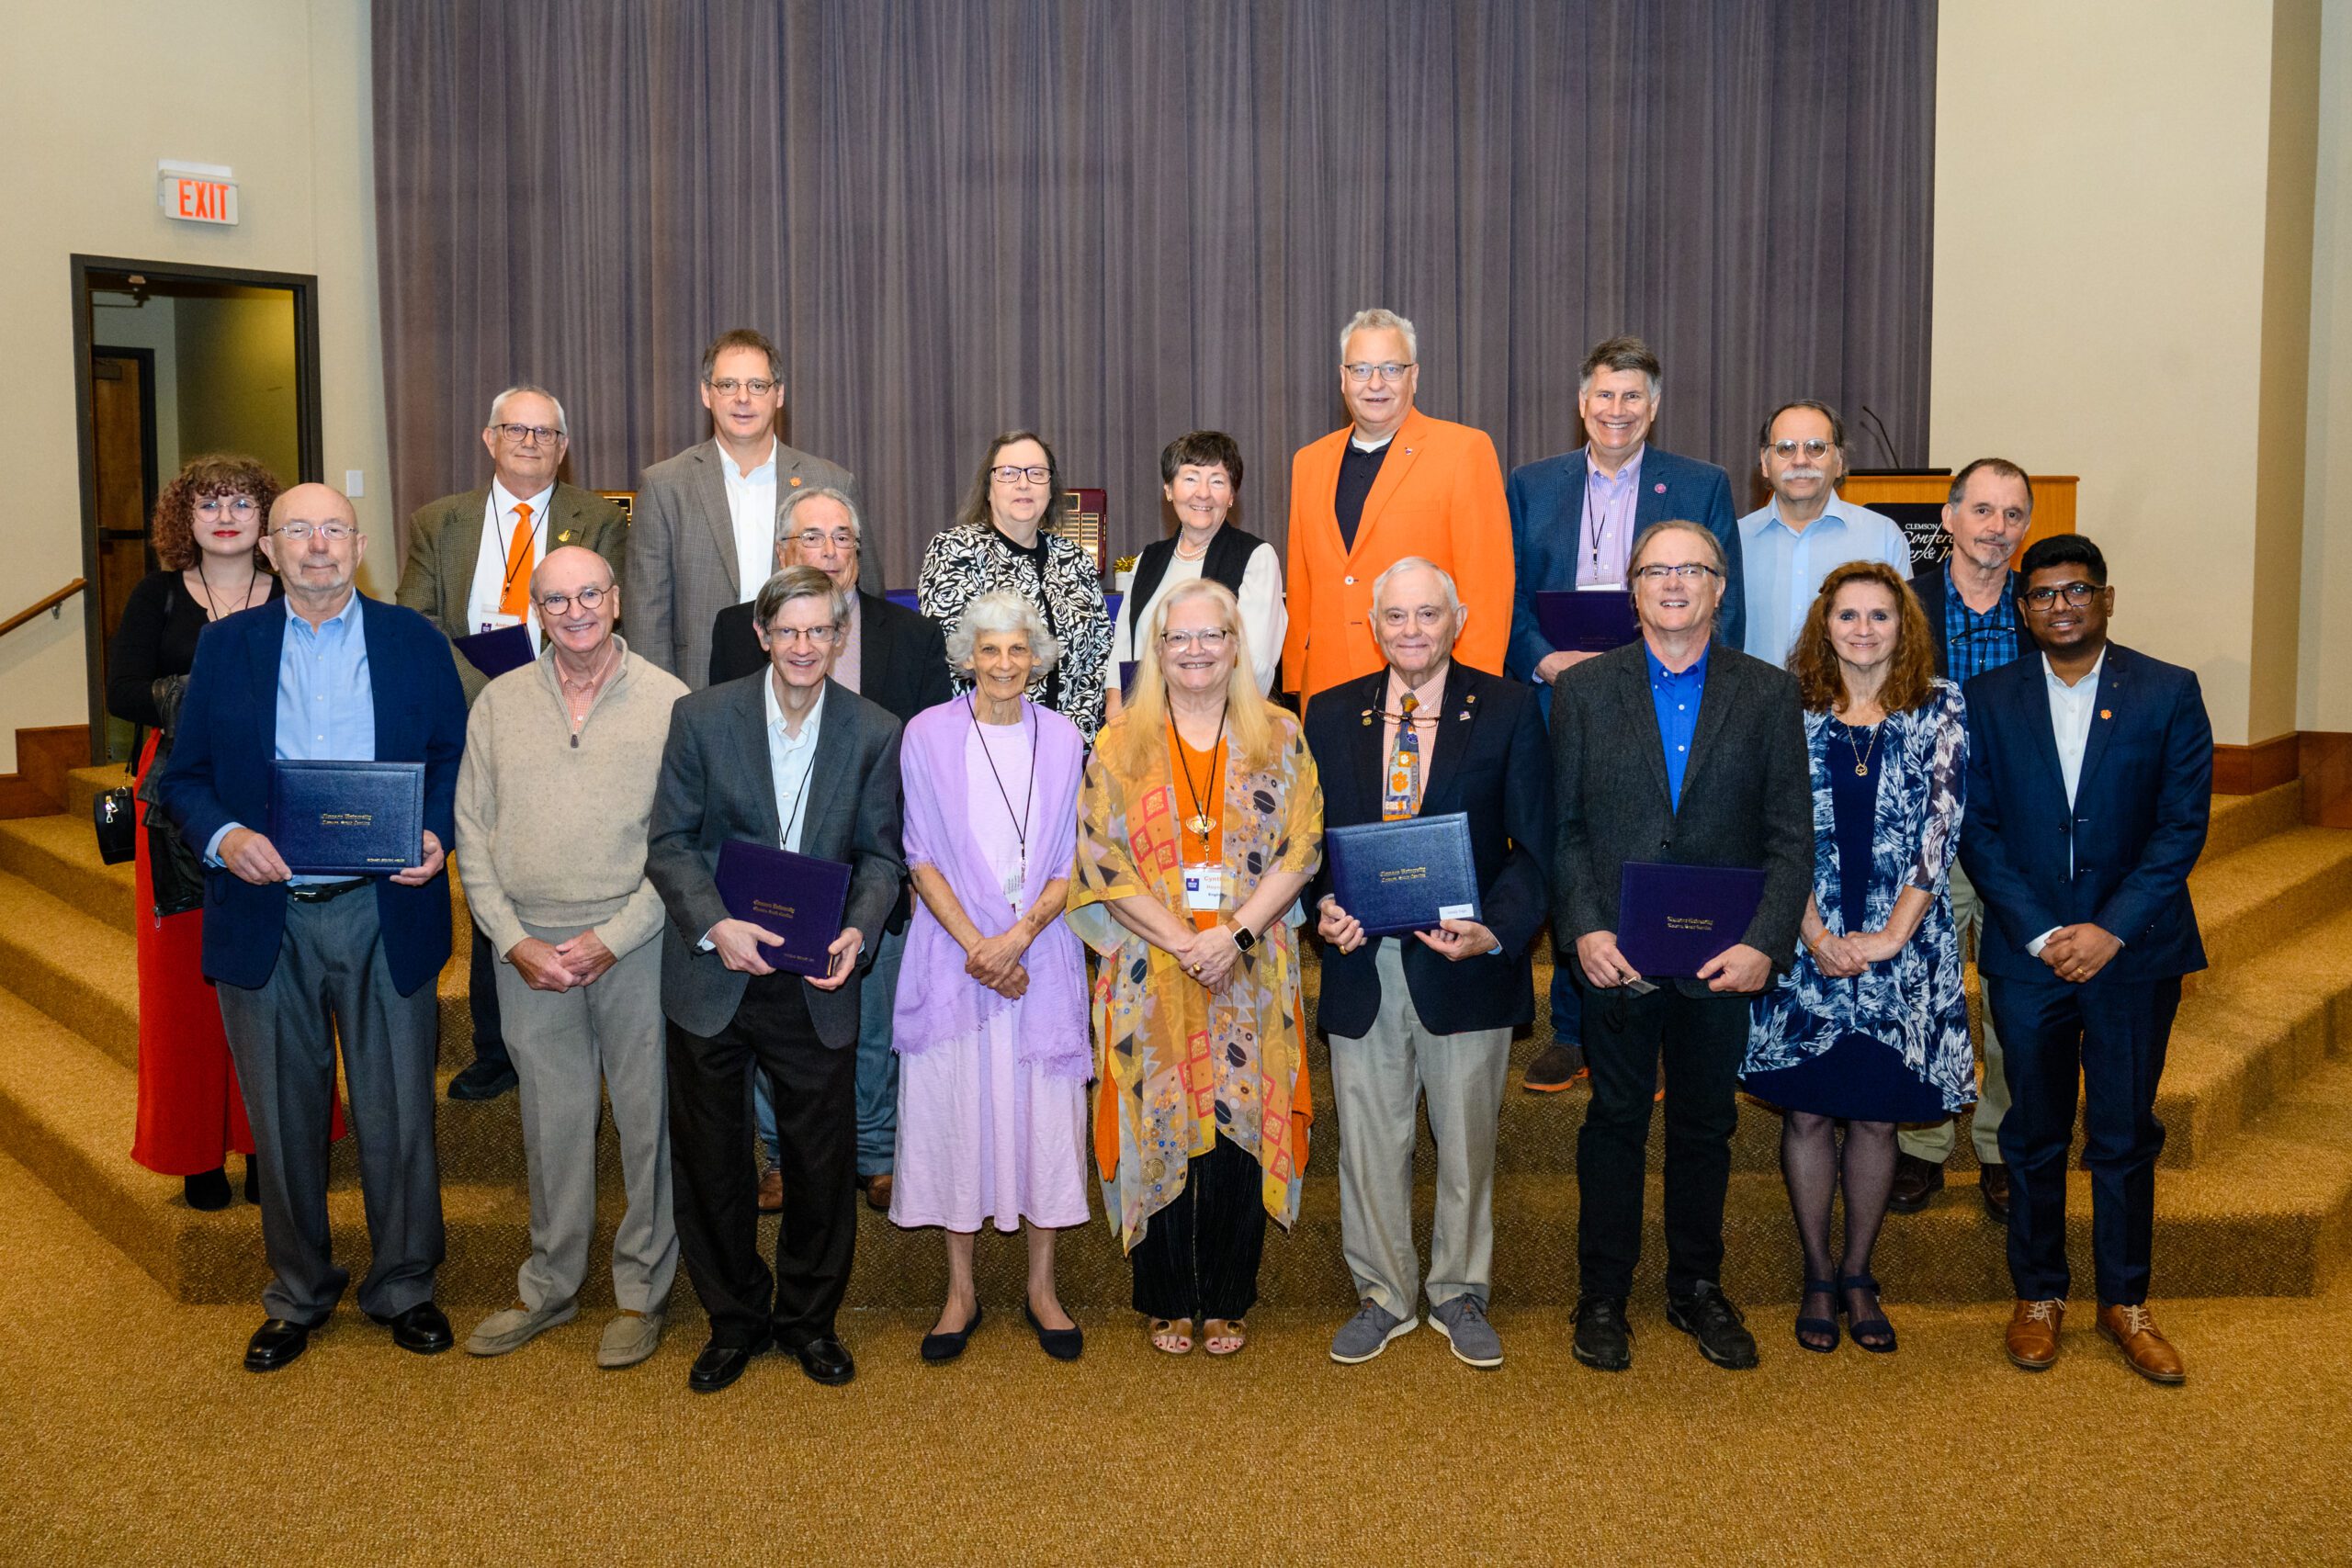 New Emeritus/a faculty members pose at Emeritus Day